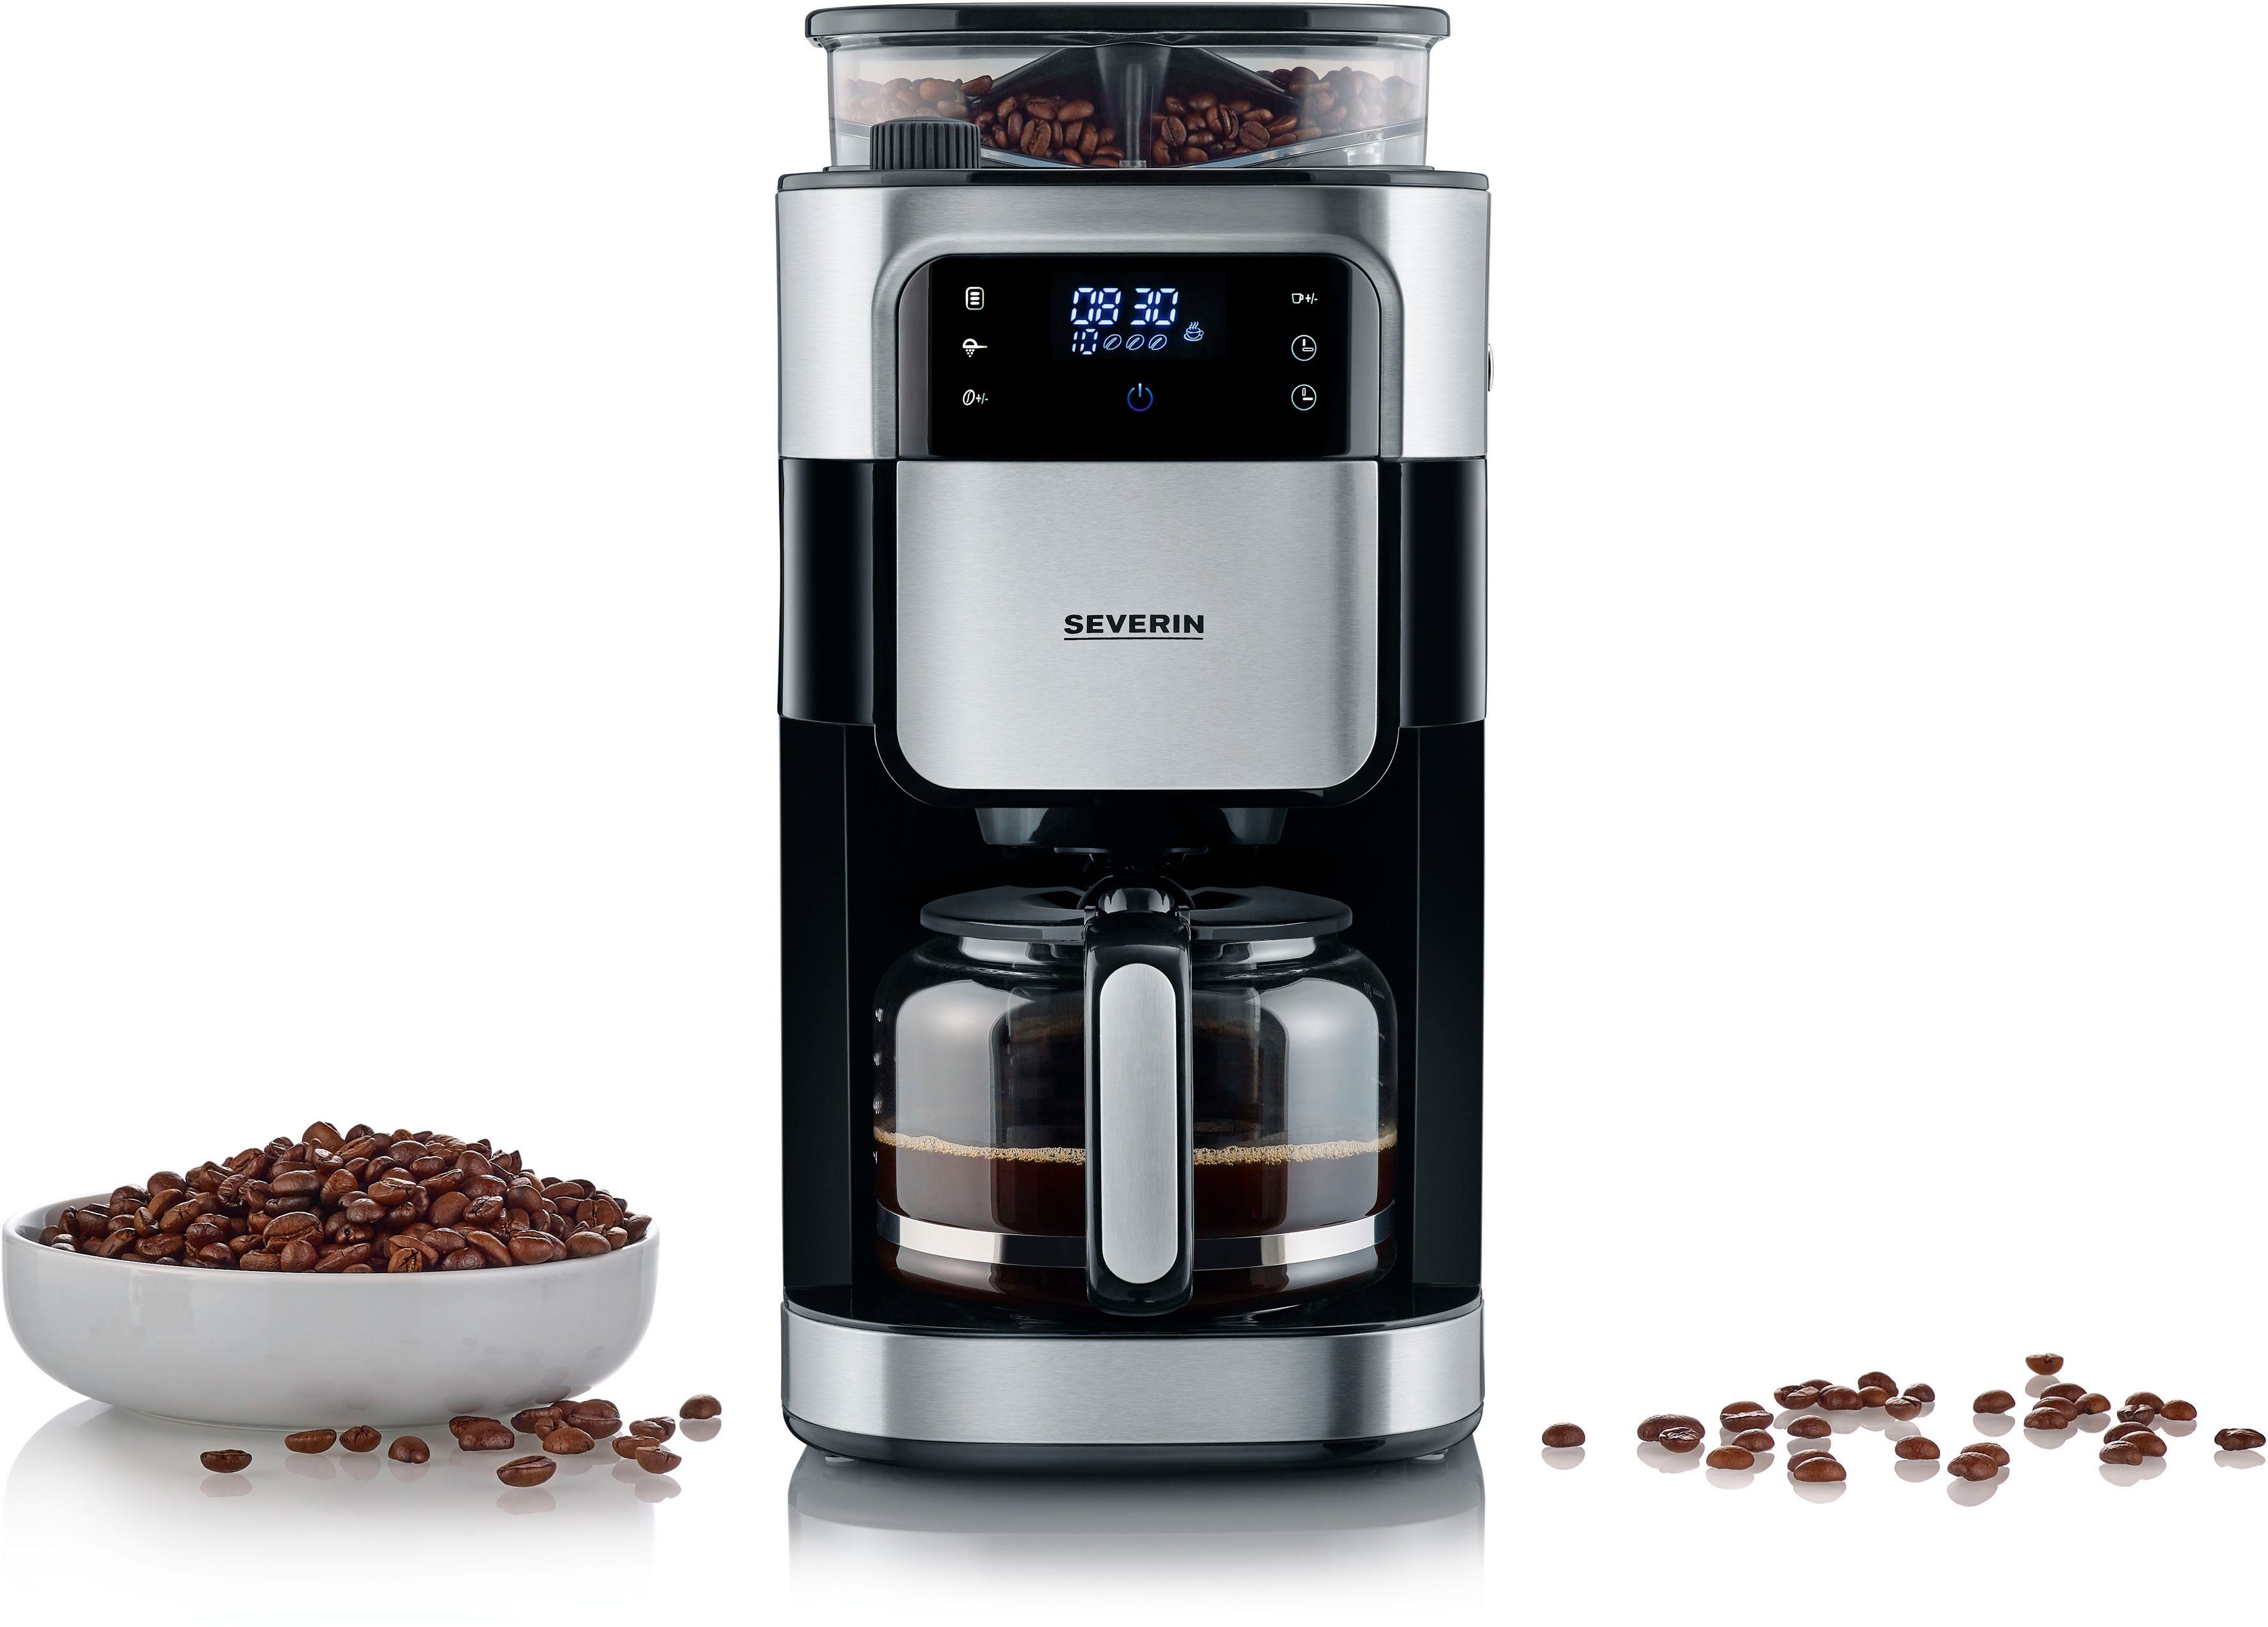 Severin Kaffeemaschine mit Mahlwerk KA 4813, 1,25l Kaffeekanne,  Permanentfilter 1x4, Mahlgrad und Kaffeemenge einstellbar, Warmhalten: